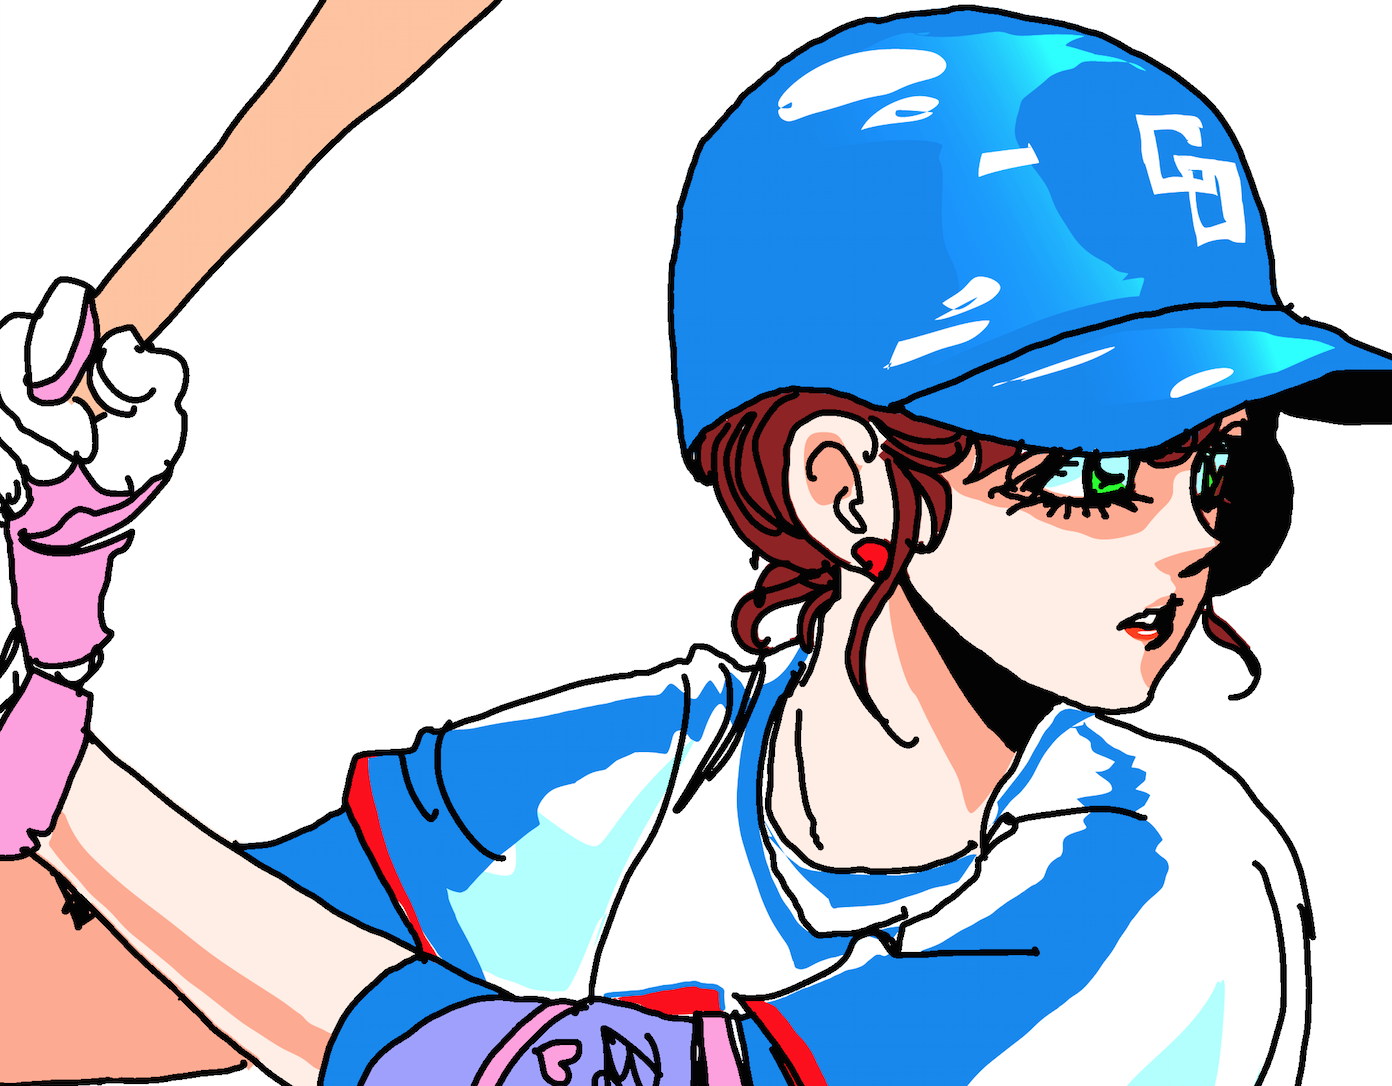 曽田正人 公式ブログ カワイイ野球女子は好きですか 曽田正人の描き下ろしイラスト公開 Powered By Line